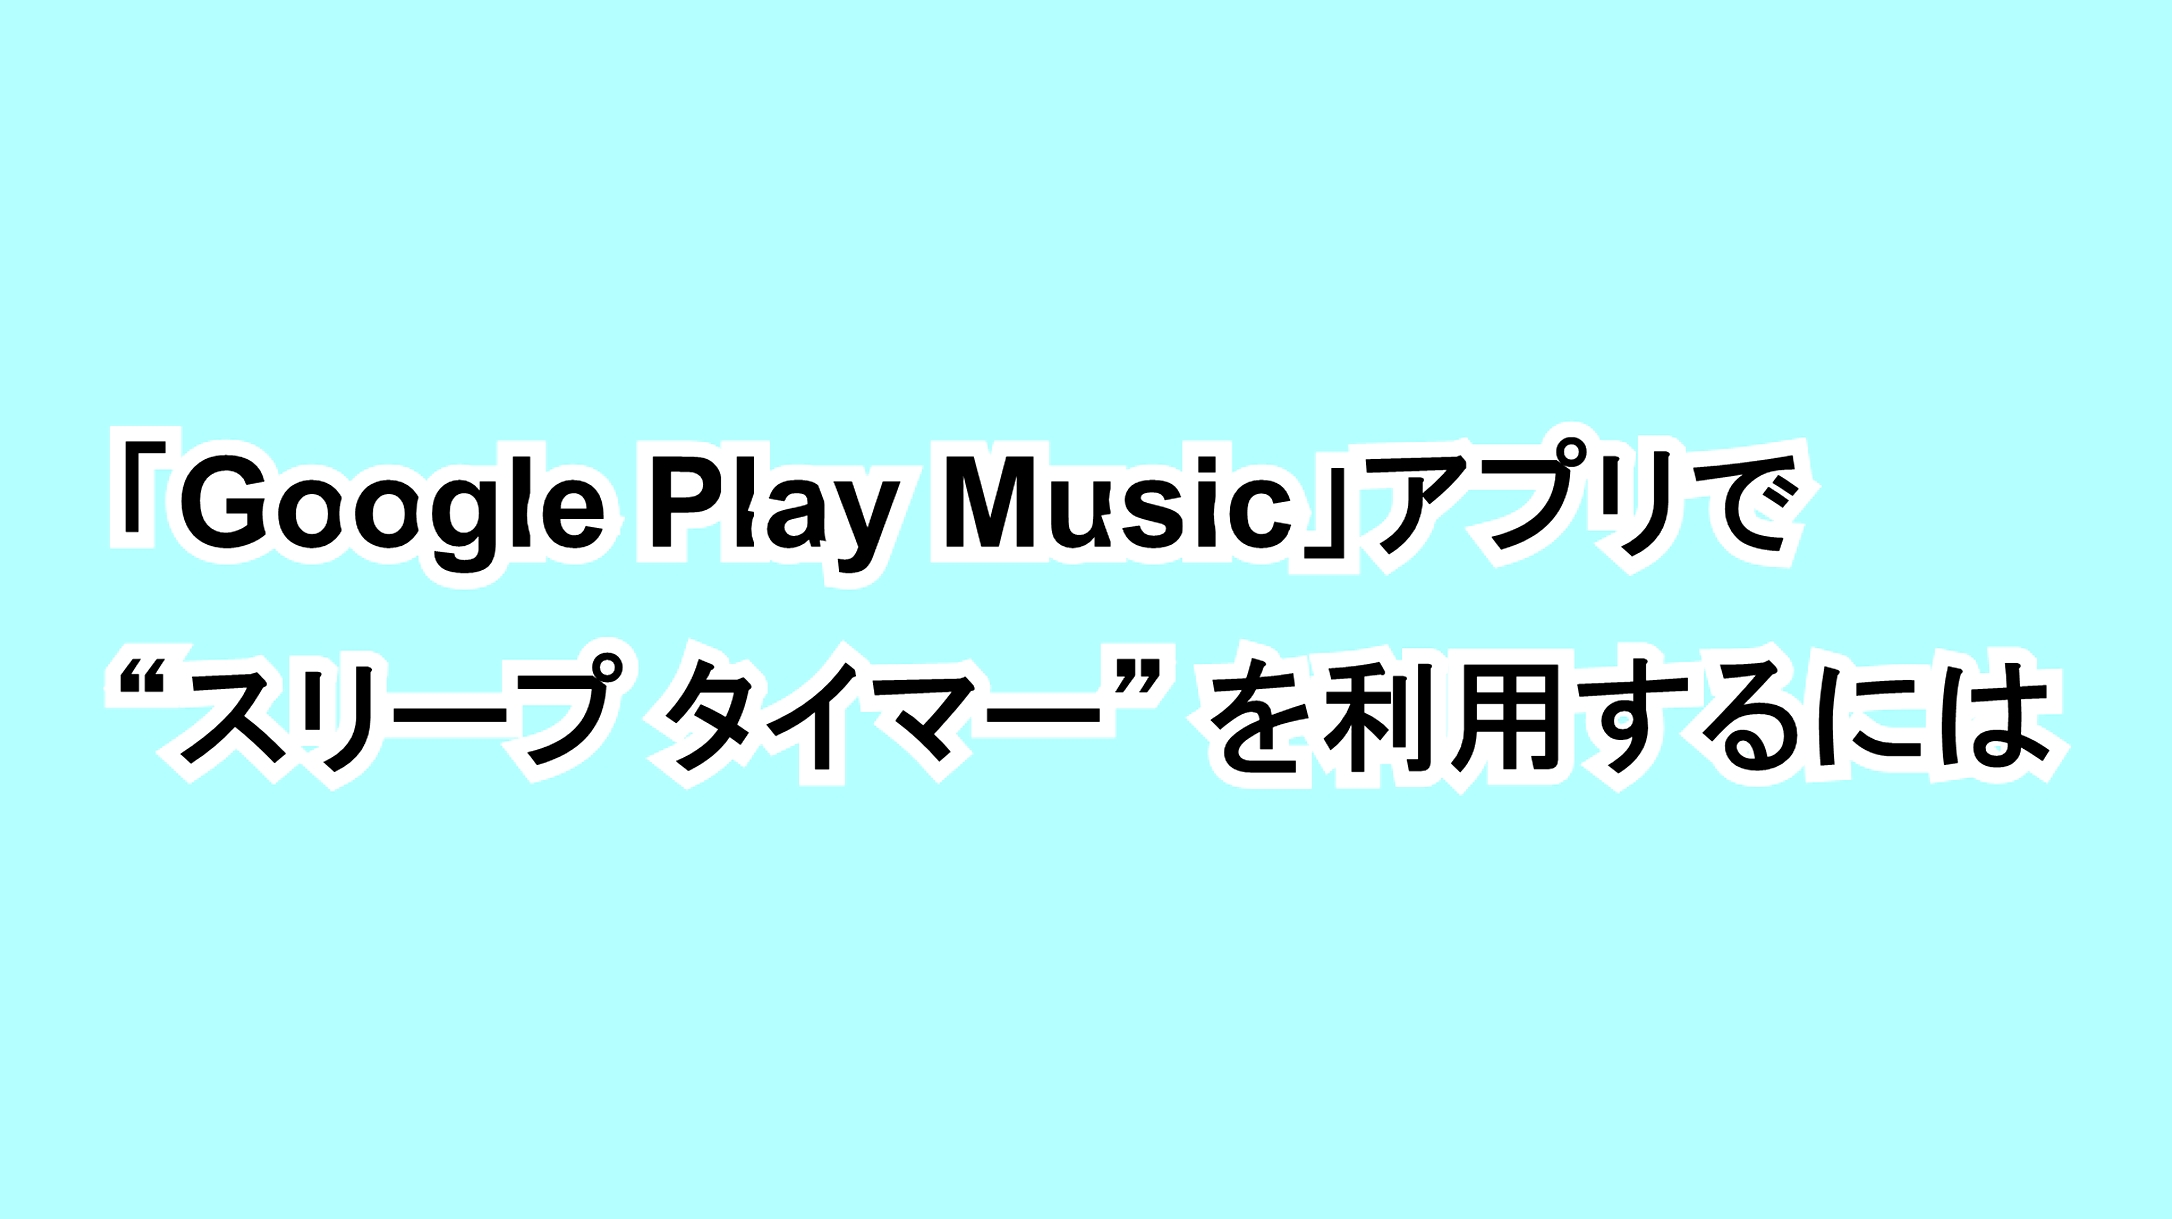 「Google Play Music」アプリで“スリープ タイマー”を利用するには